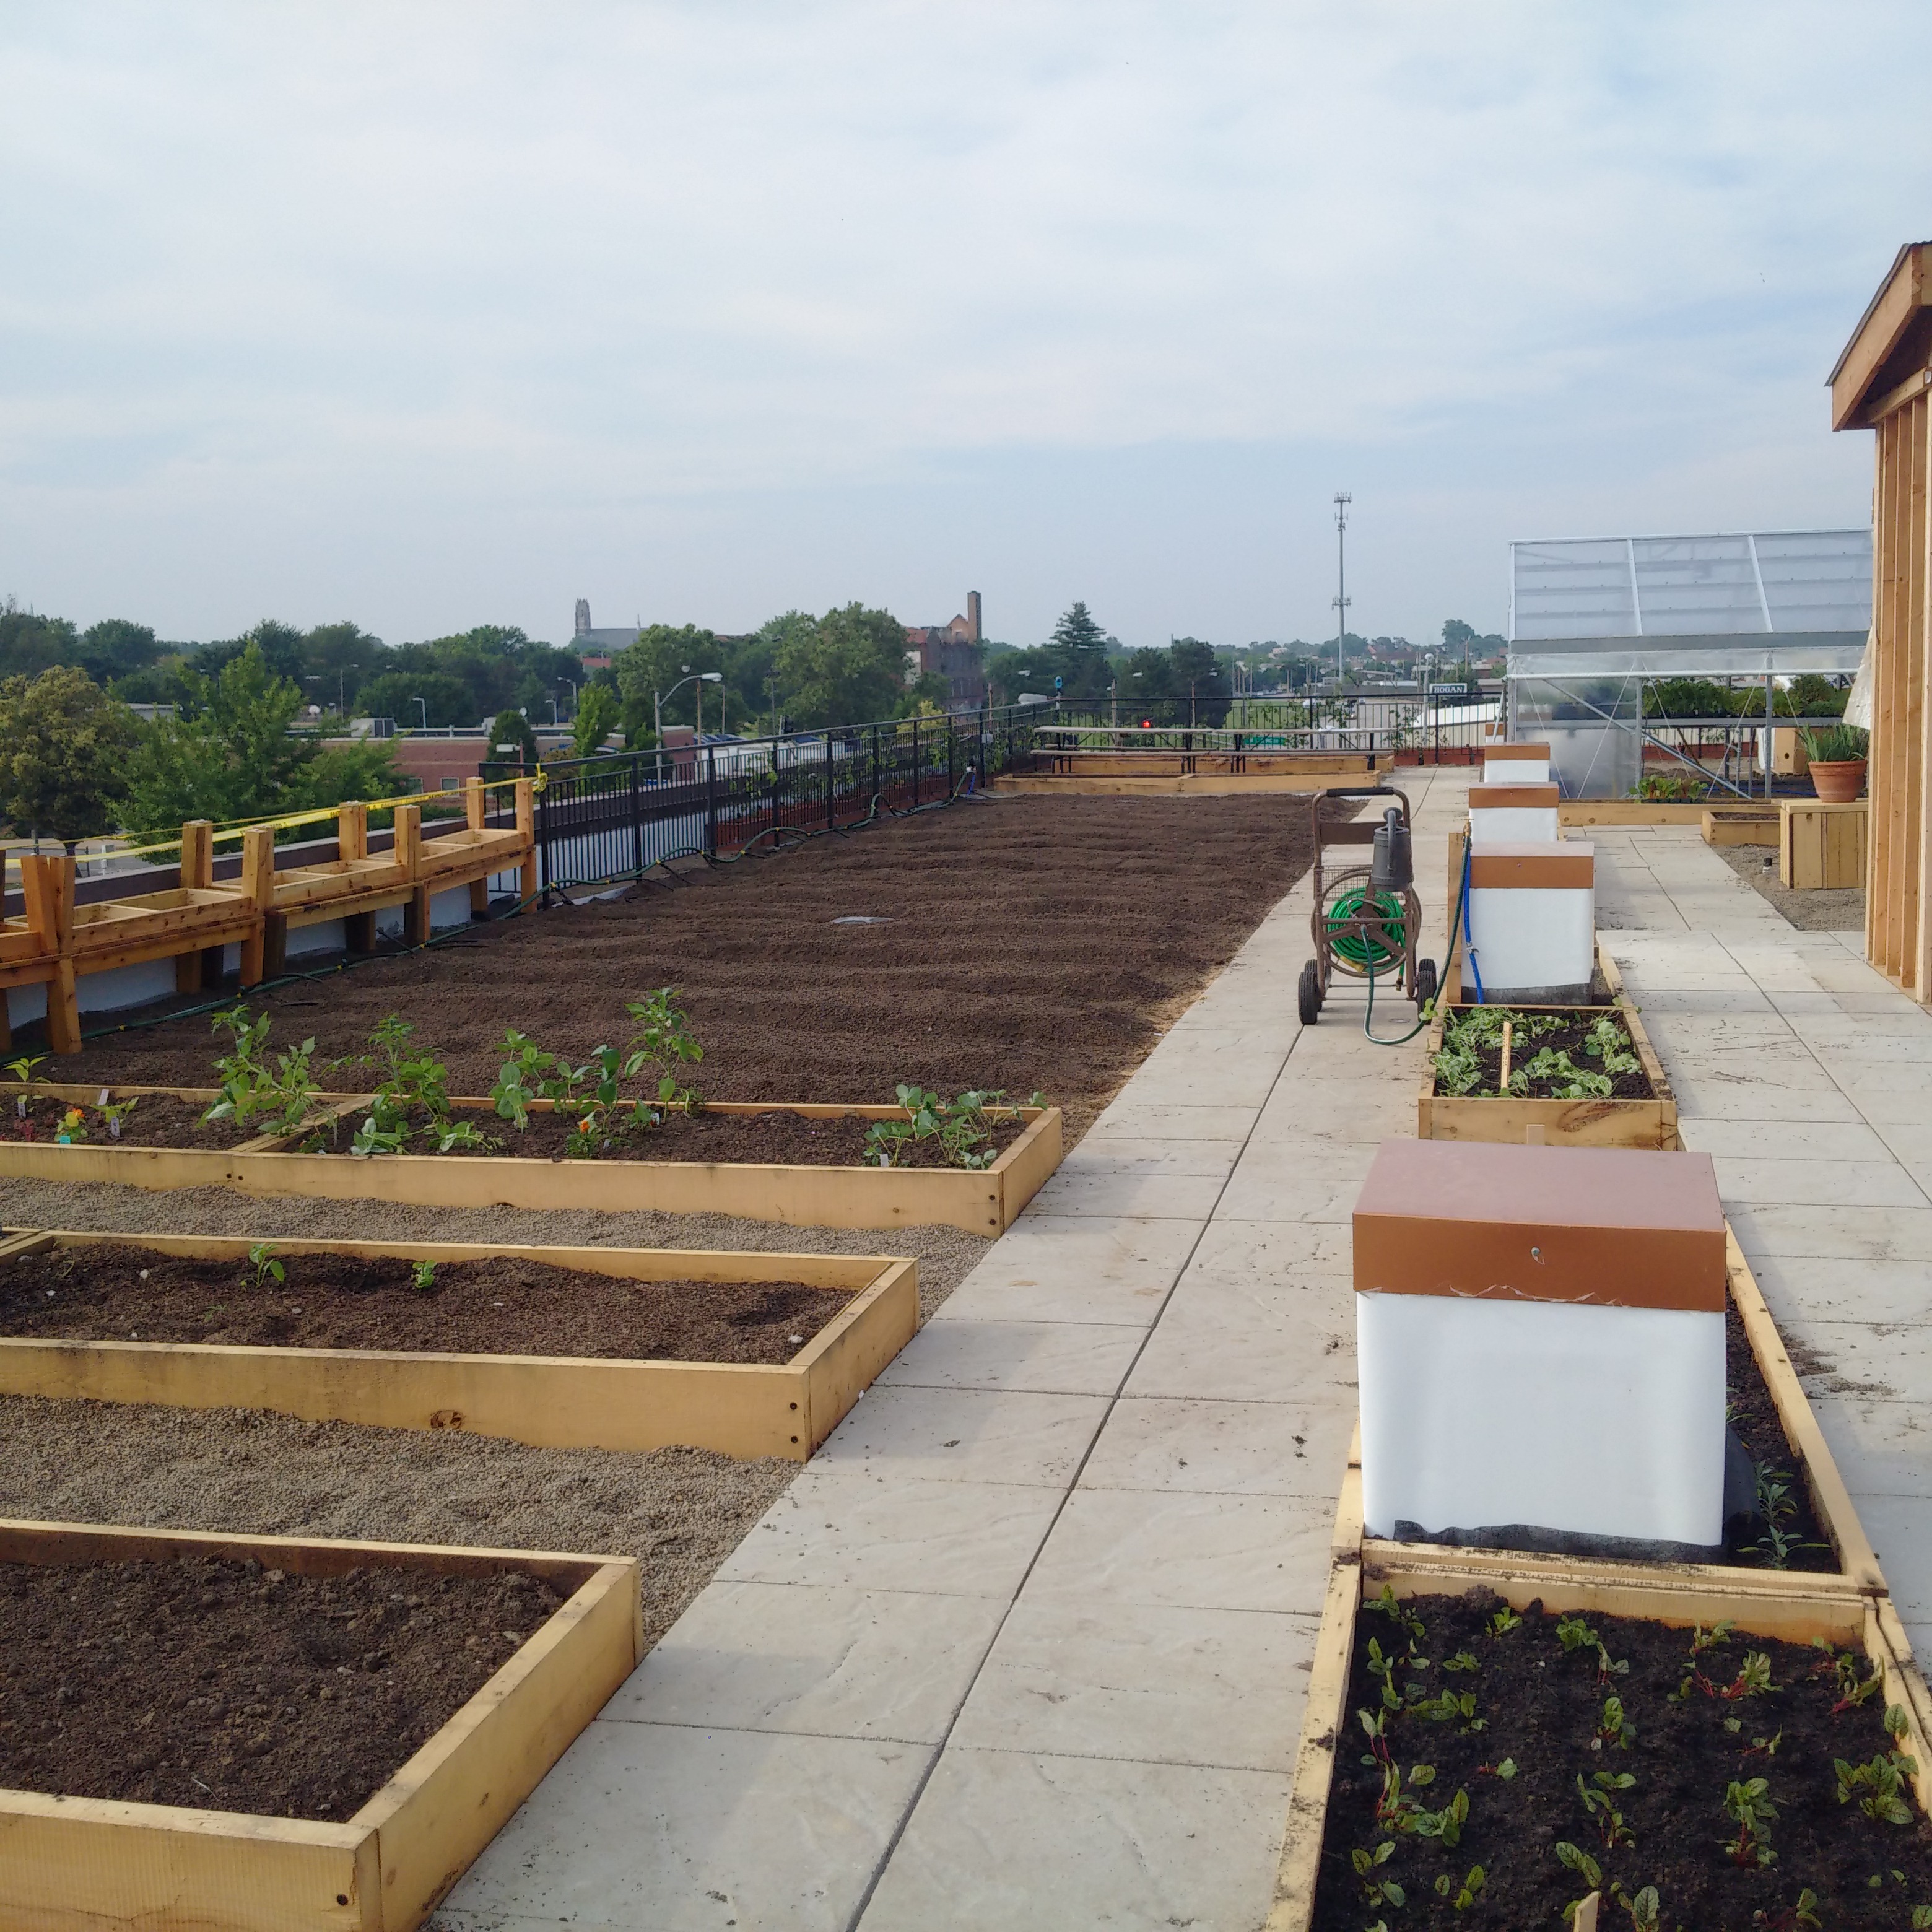 U-Haul Dealership Adds Garden to Roof